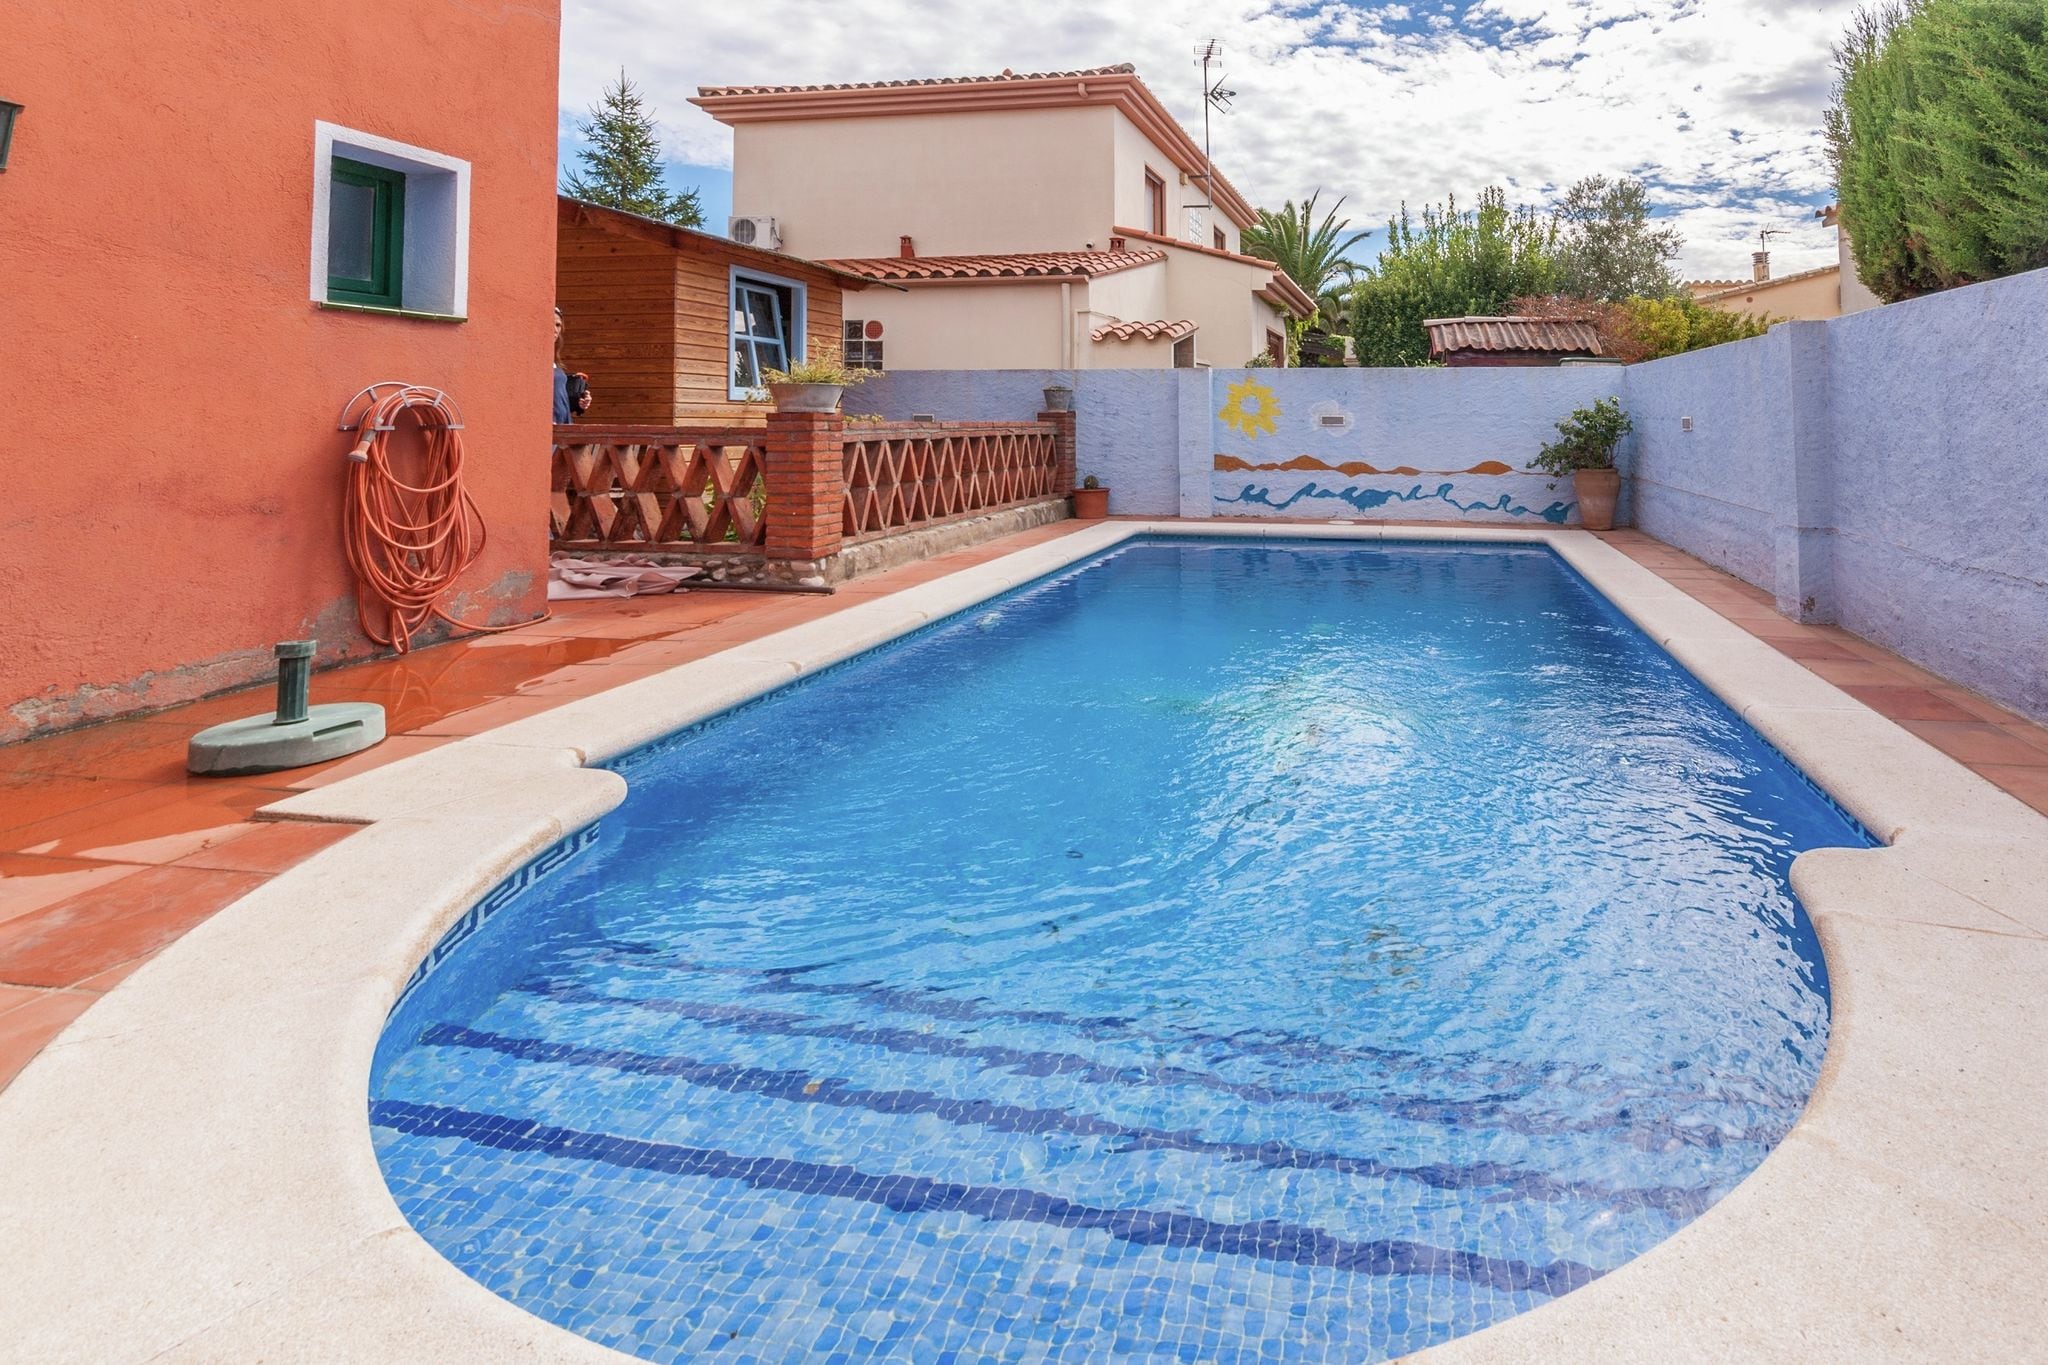 Maison de vacances cosy avec piscine à St Pere Pescador